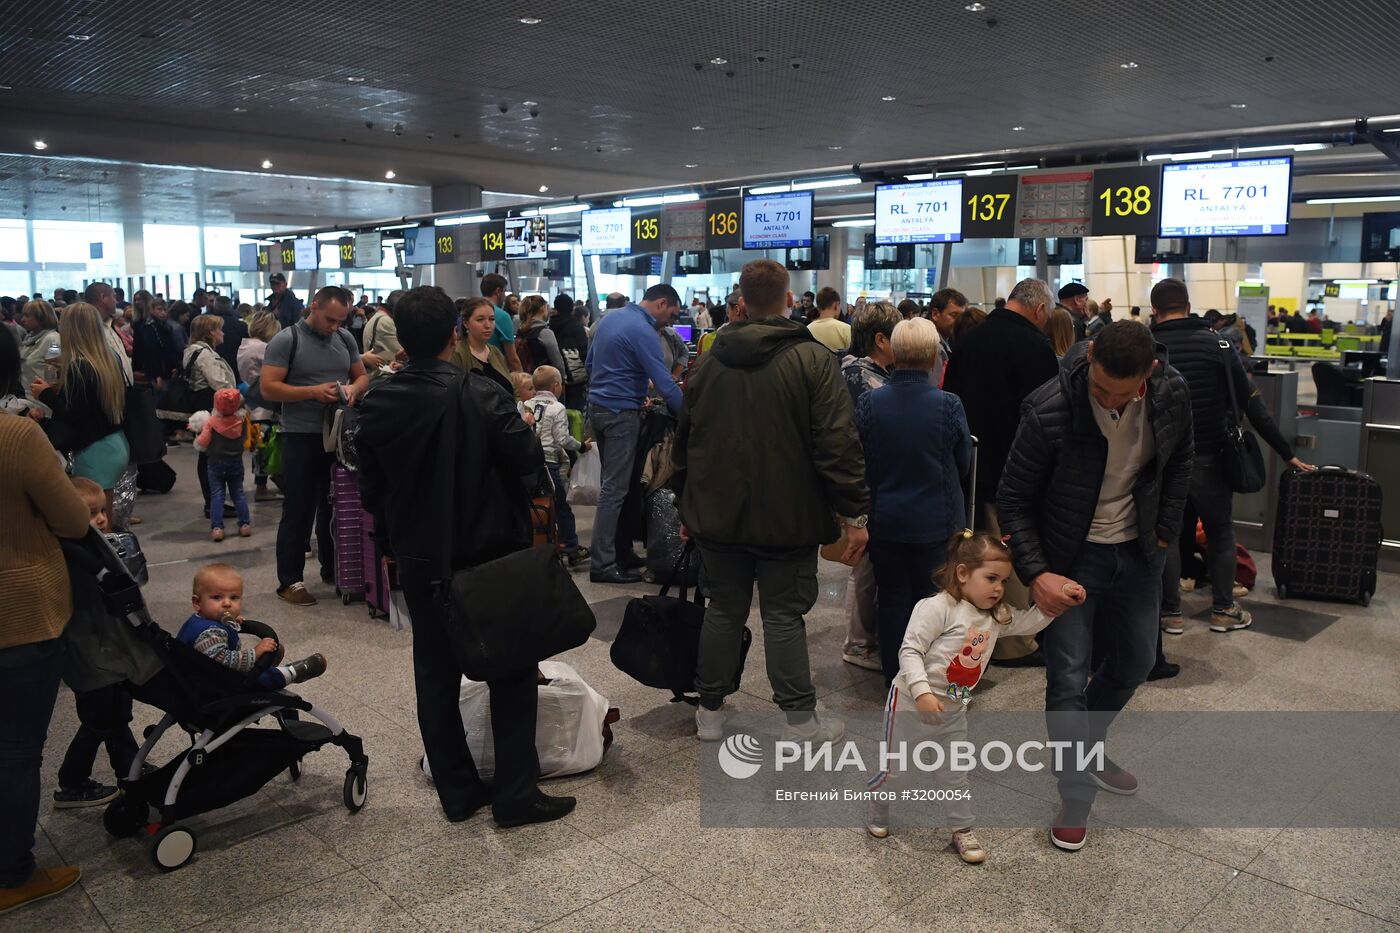 Авиакомпания "ВИМ-Авиа" прекратила чартерные рейсы